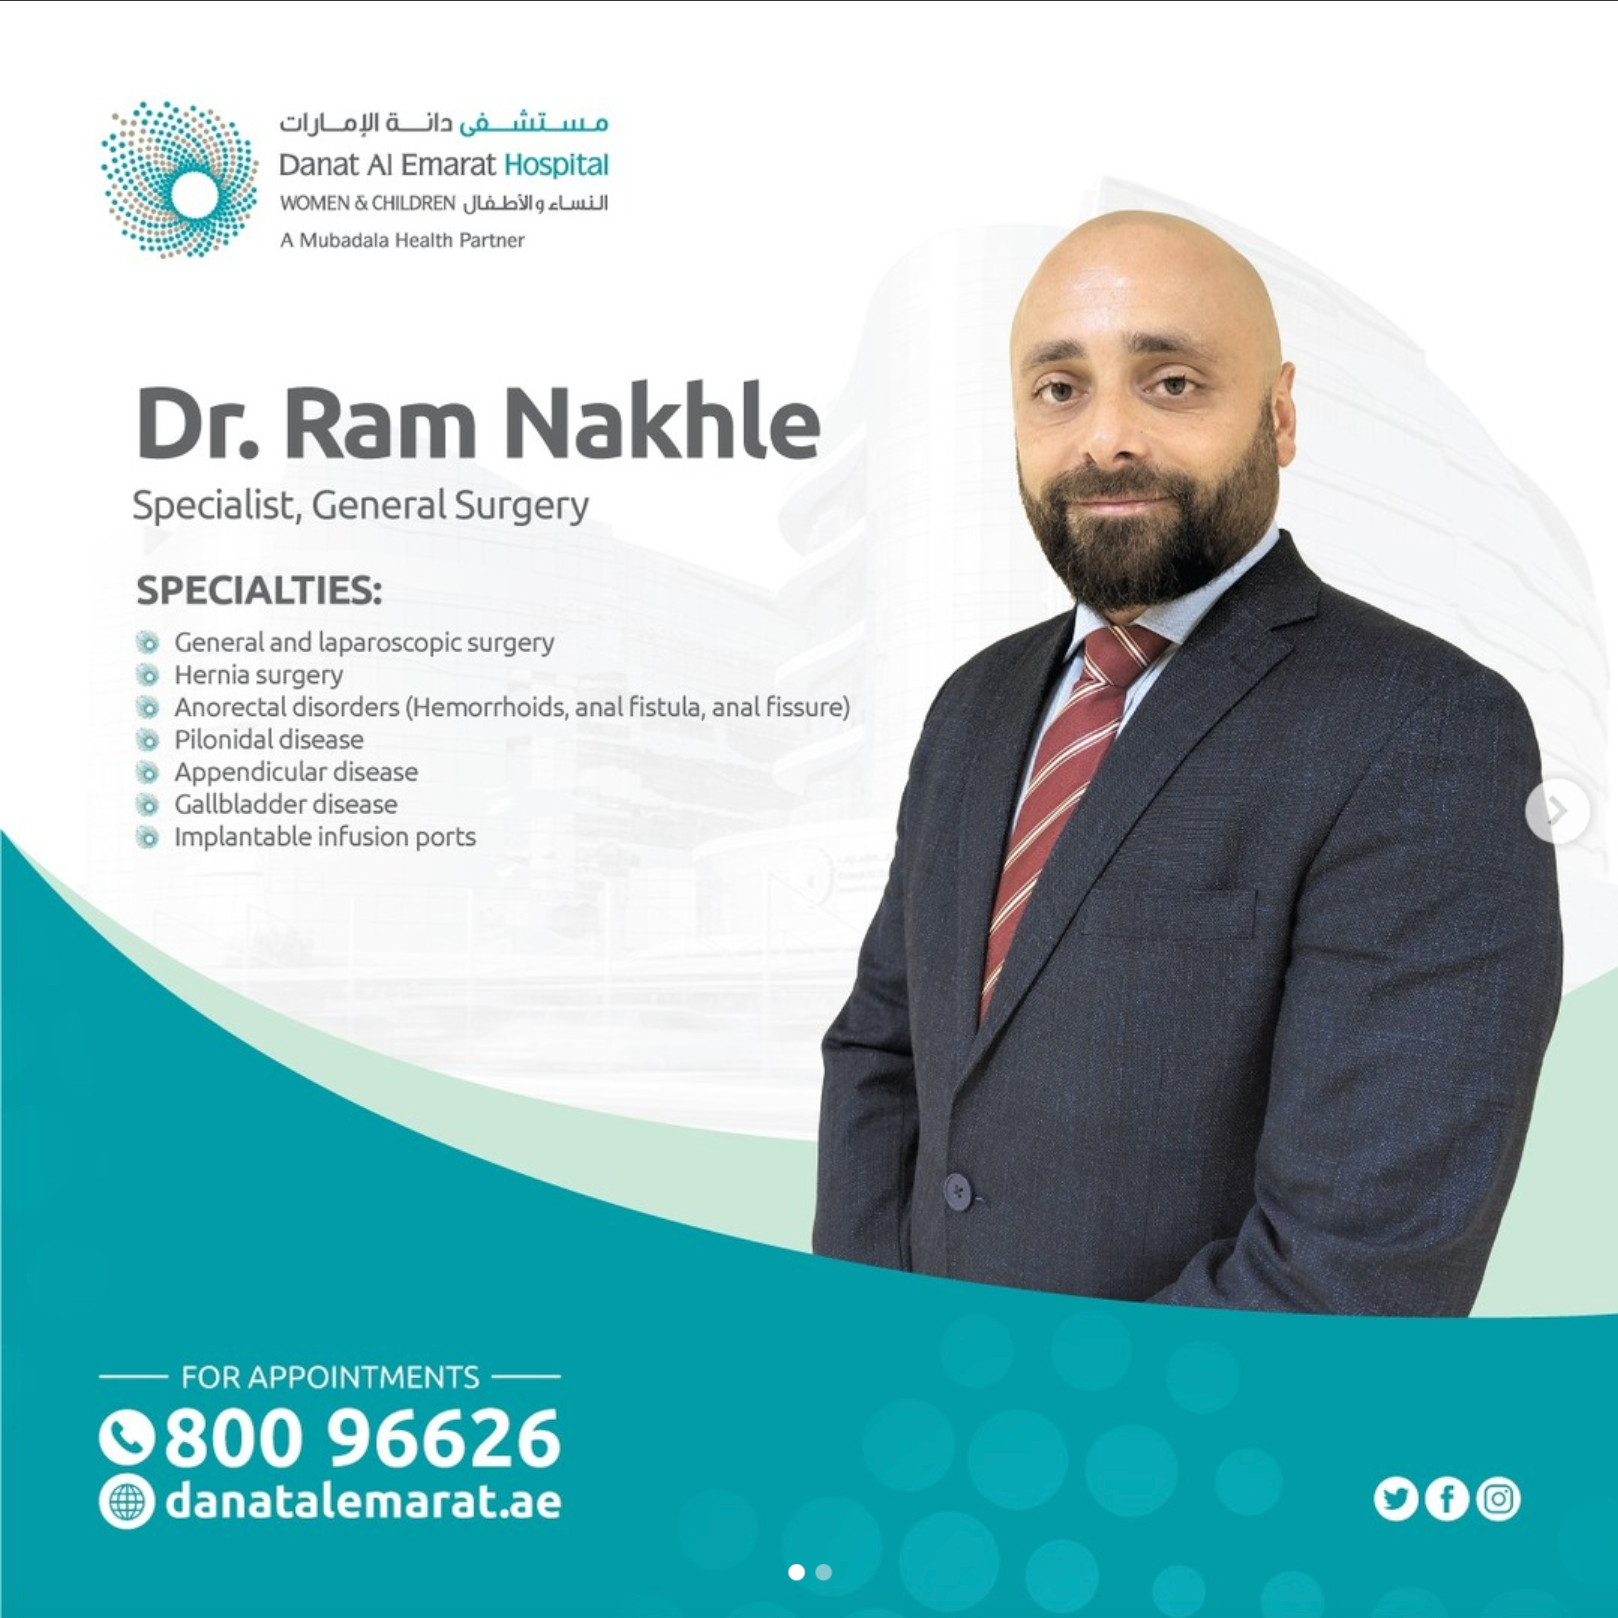 Dr Ram Nakhle